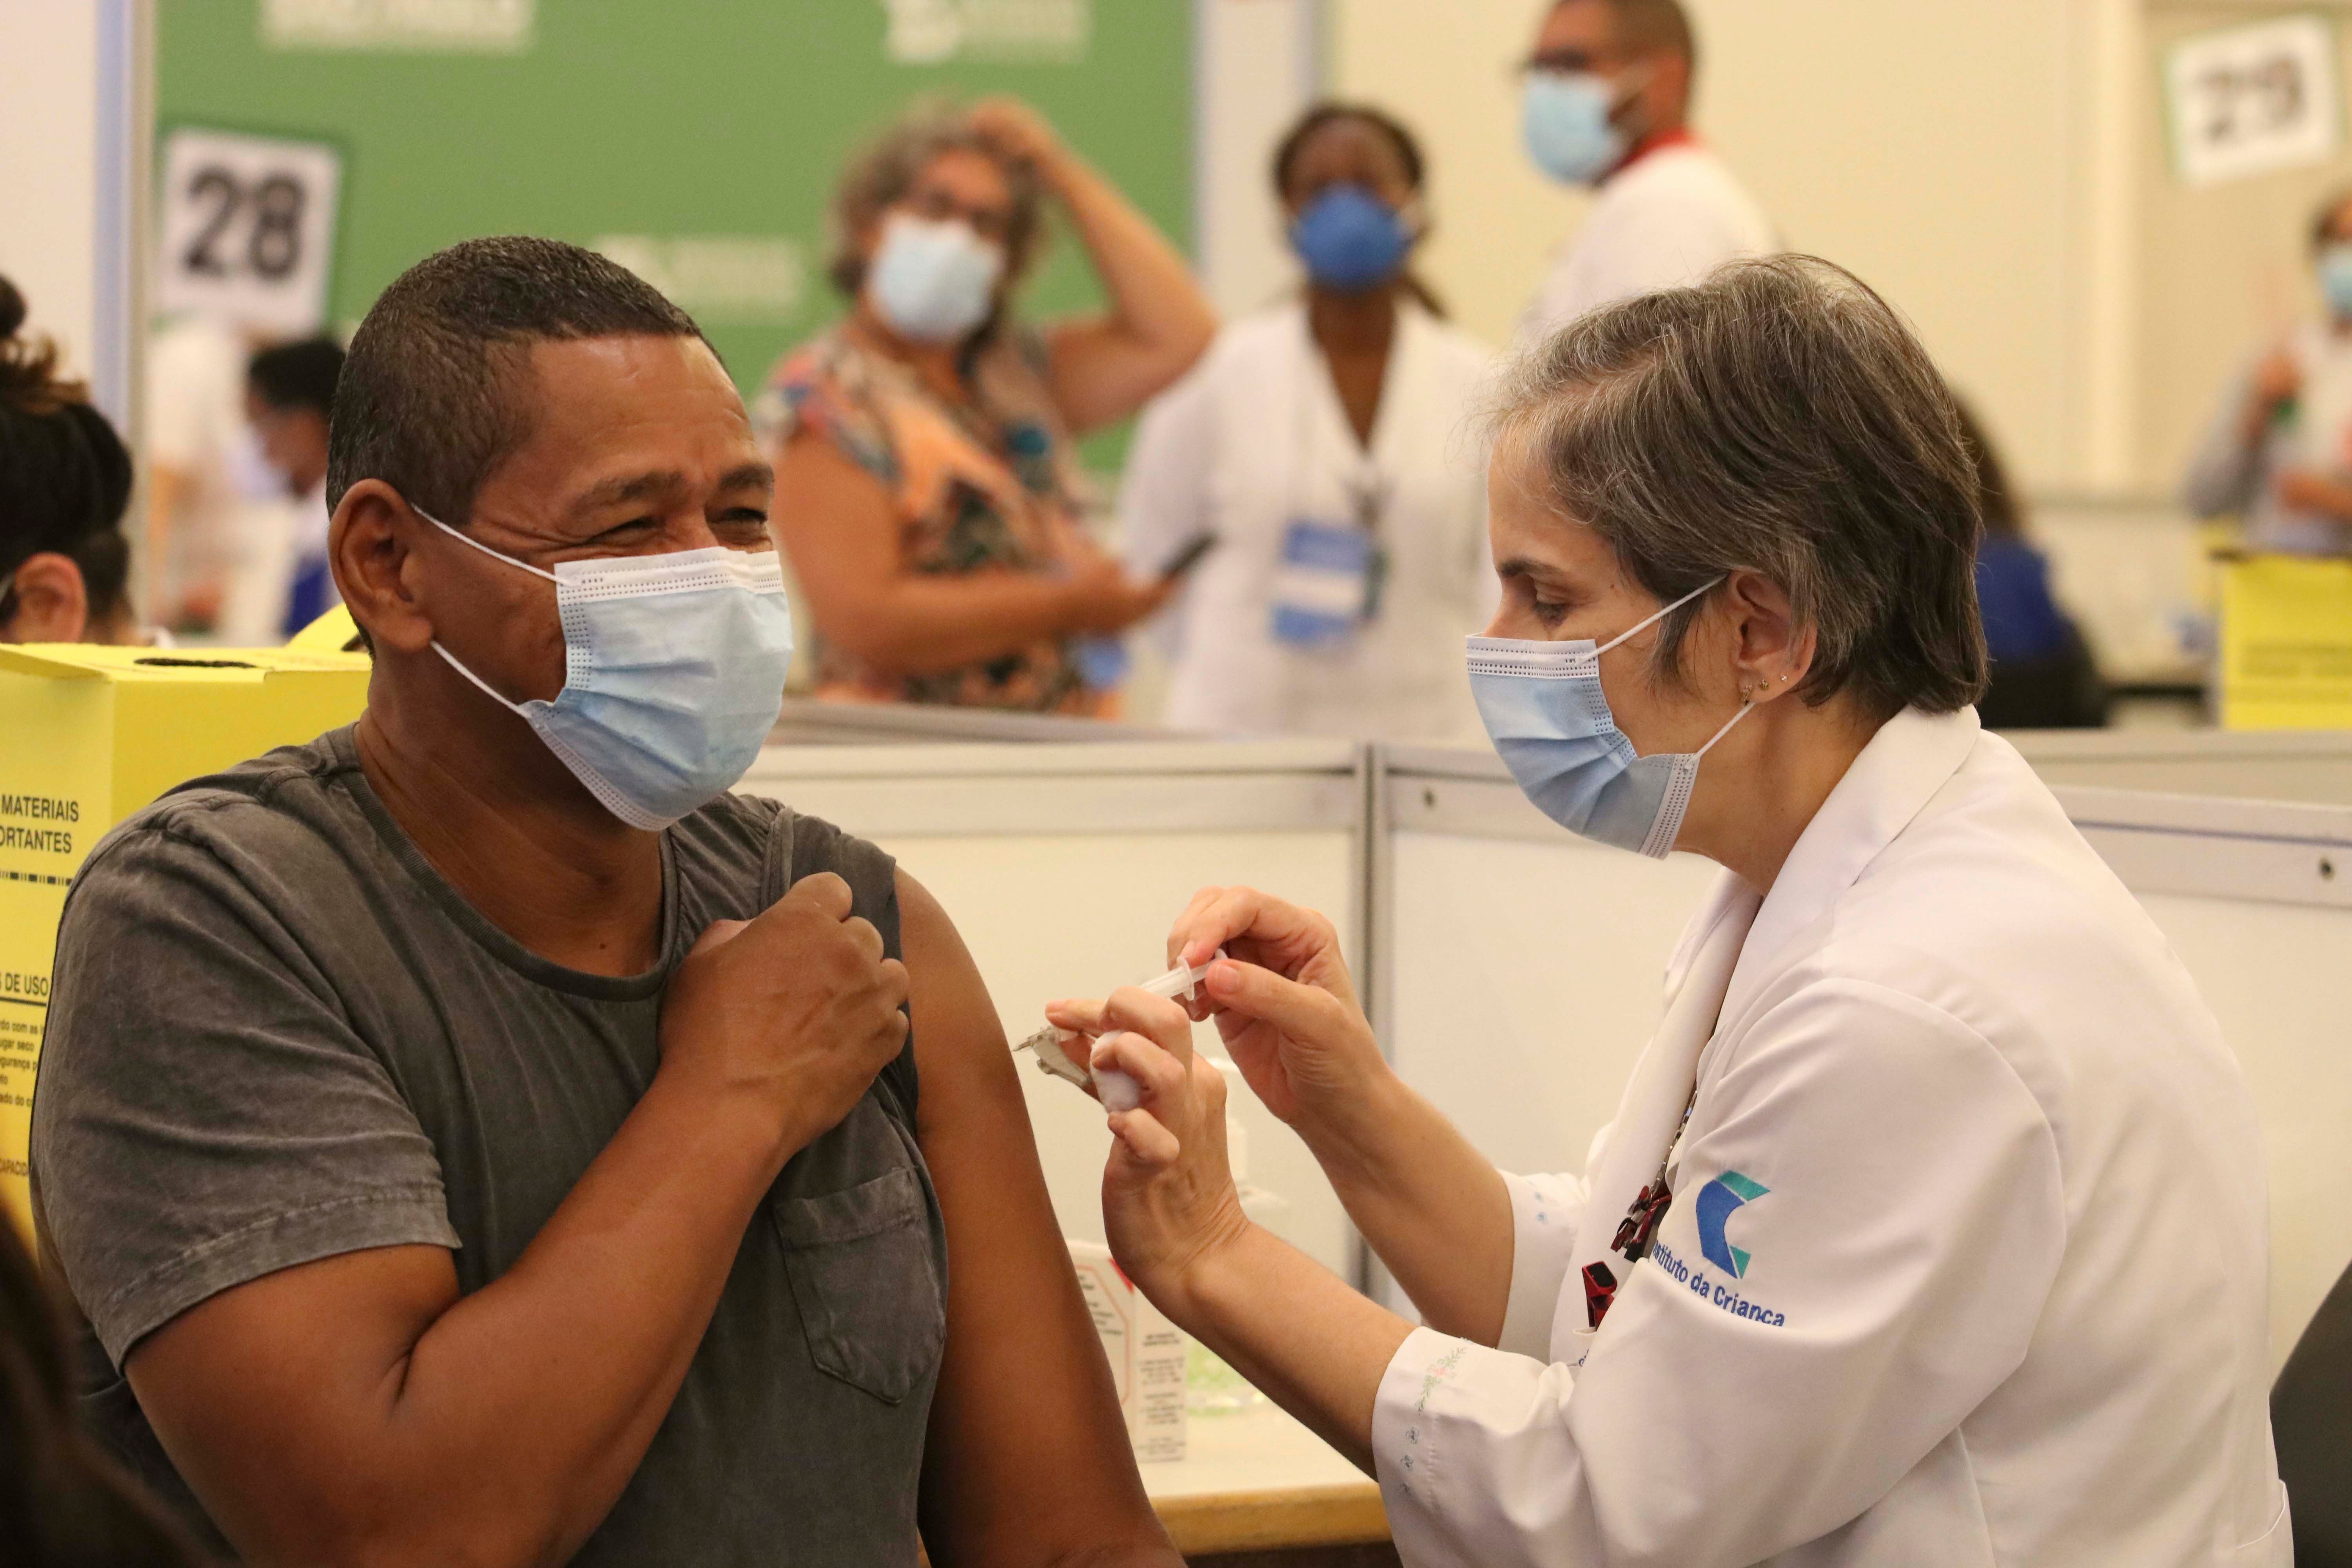 Uma mulher profissional da saude, branca, usando mascara, aplicando a vacina de covid-19 em um profissional da saúde, homem, negro, usando mascara, que está sorrindo